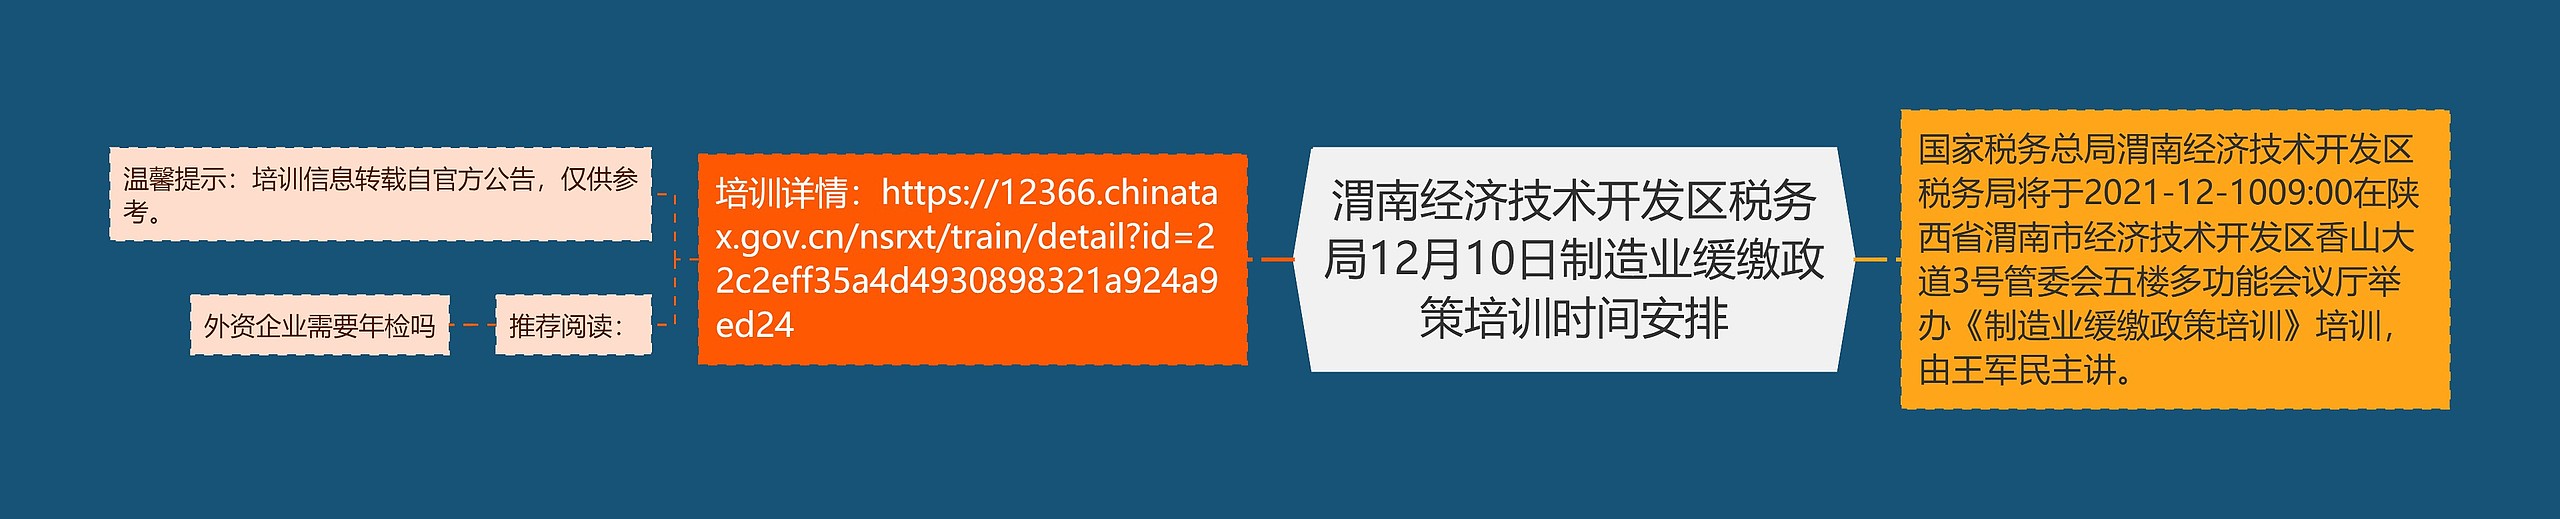 渭南经济技术开发区税务局12月10日制造业缓缴政策培训时间安排思维导图